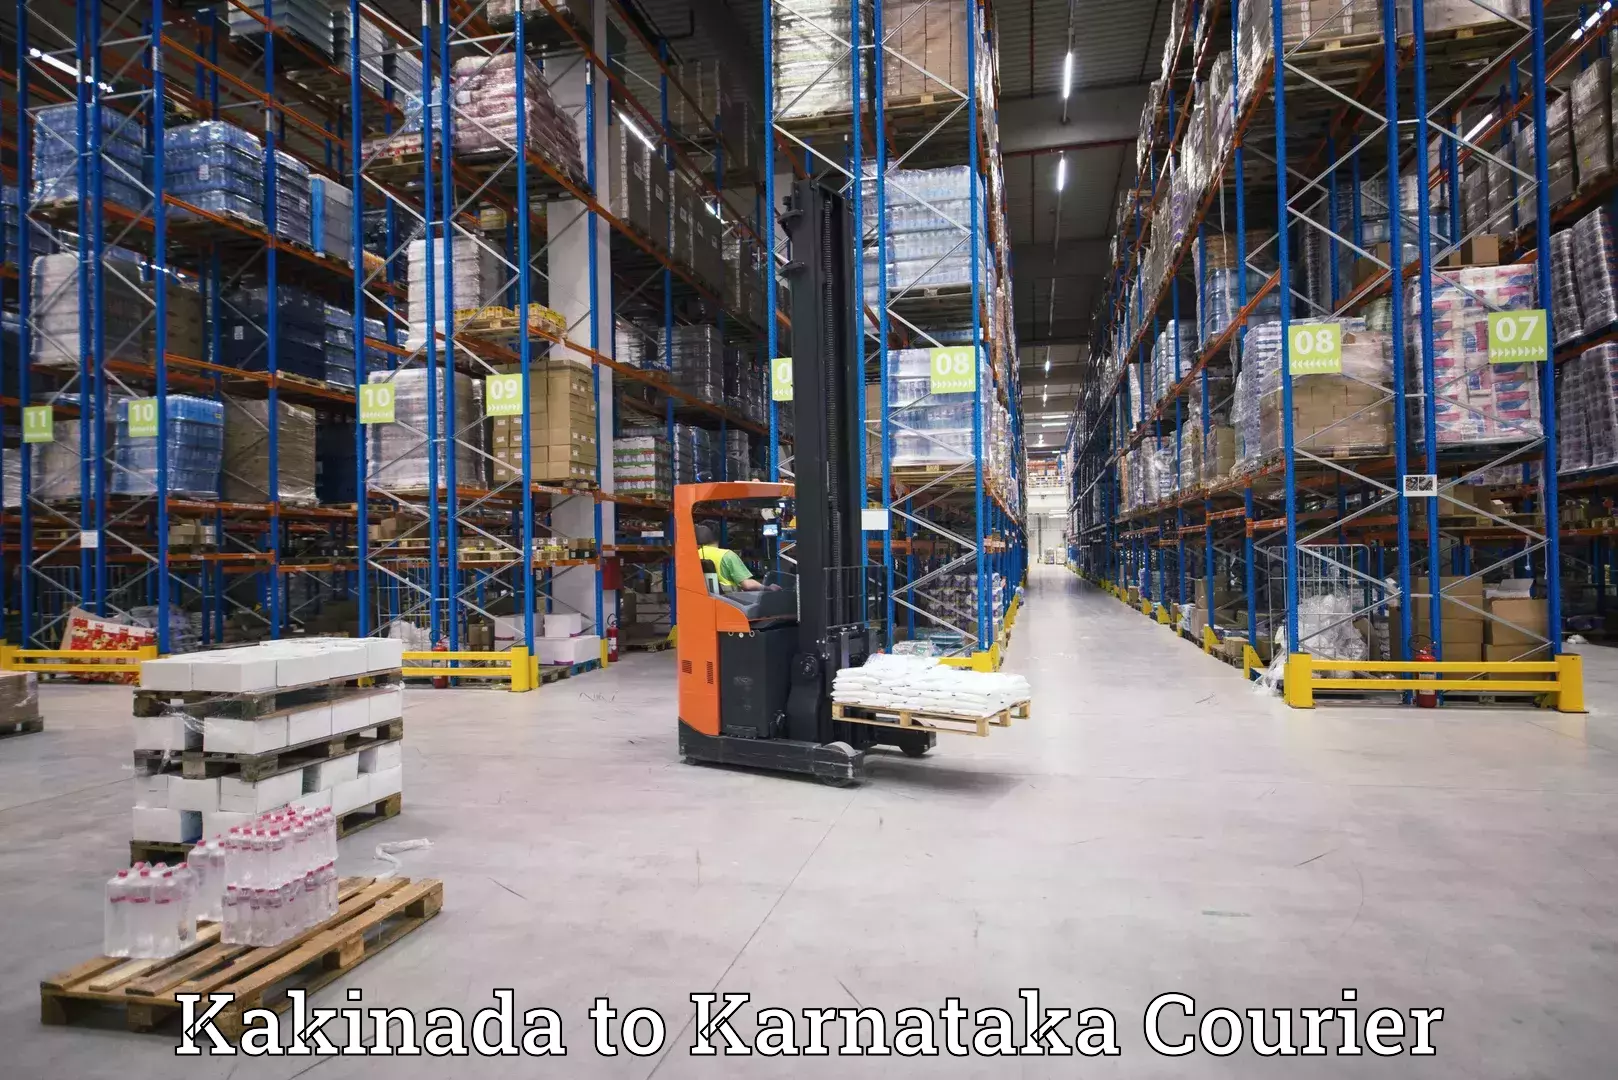 Affordable parcel service Kakinada to Kanjarakatte